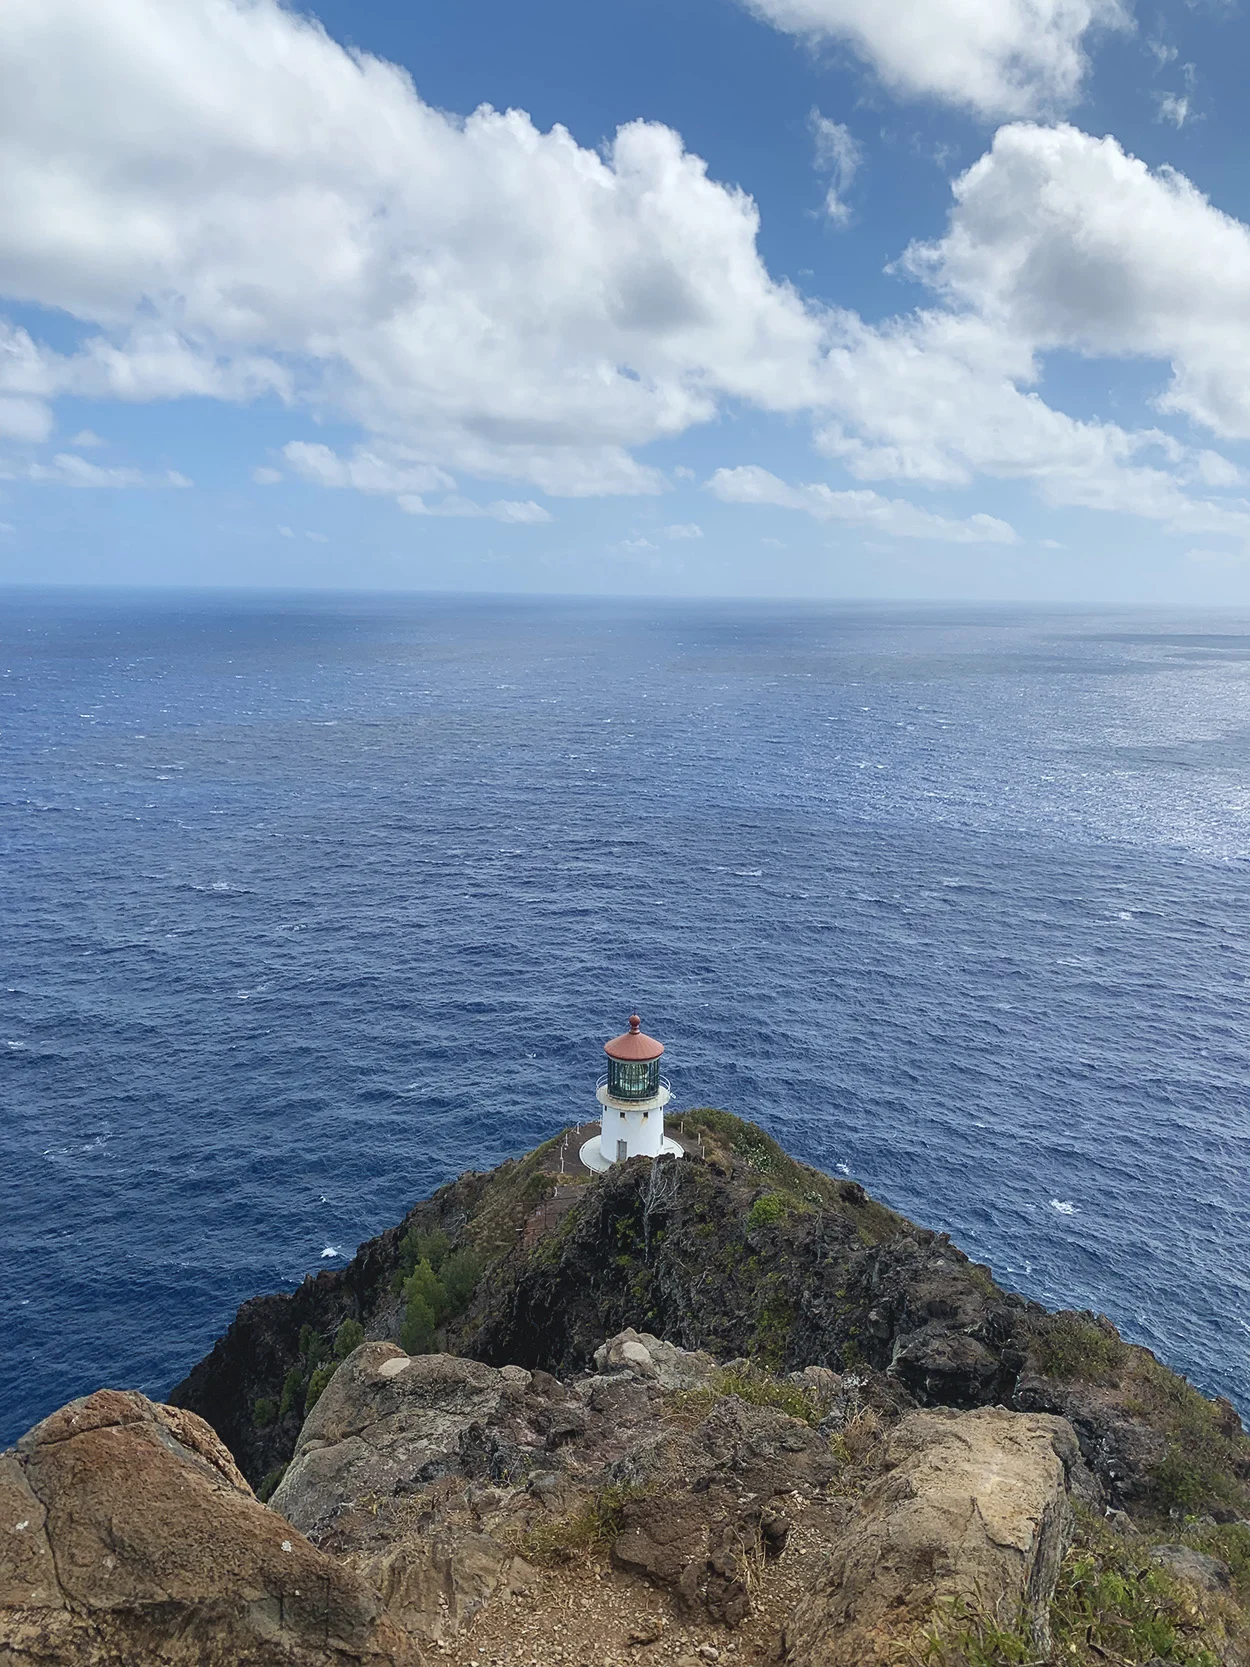 Makapu'u Lighthouse Trail in Oahu, Hawaii